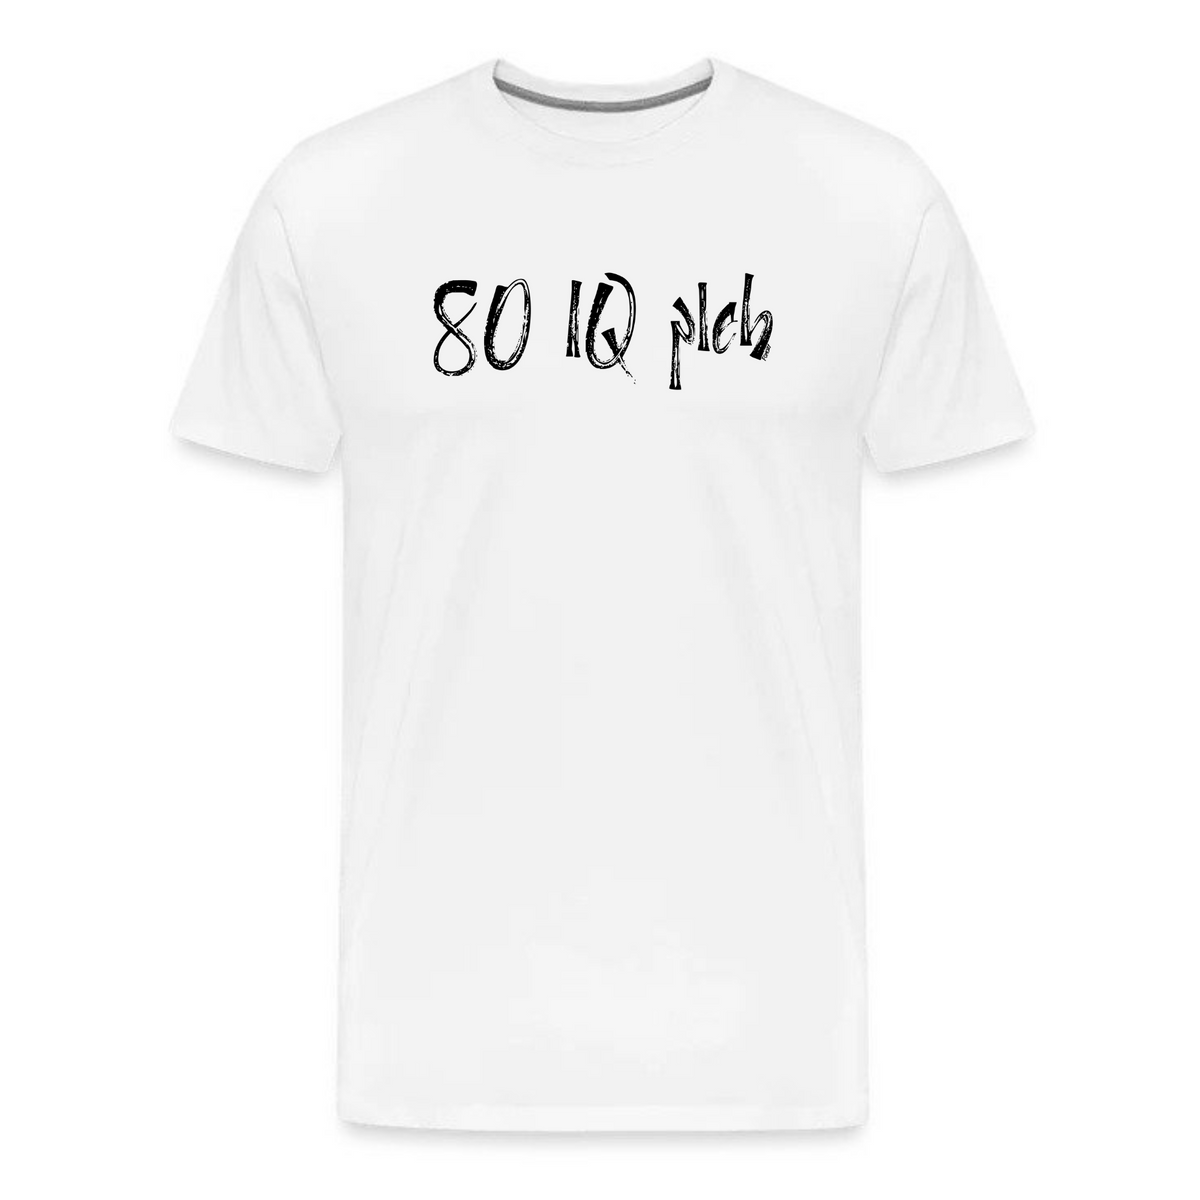 80 IQ Pleb Bitcoin T-Shirt - fomo21